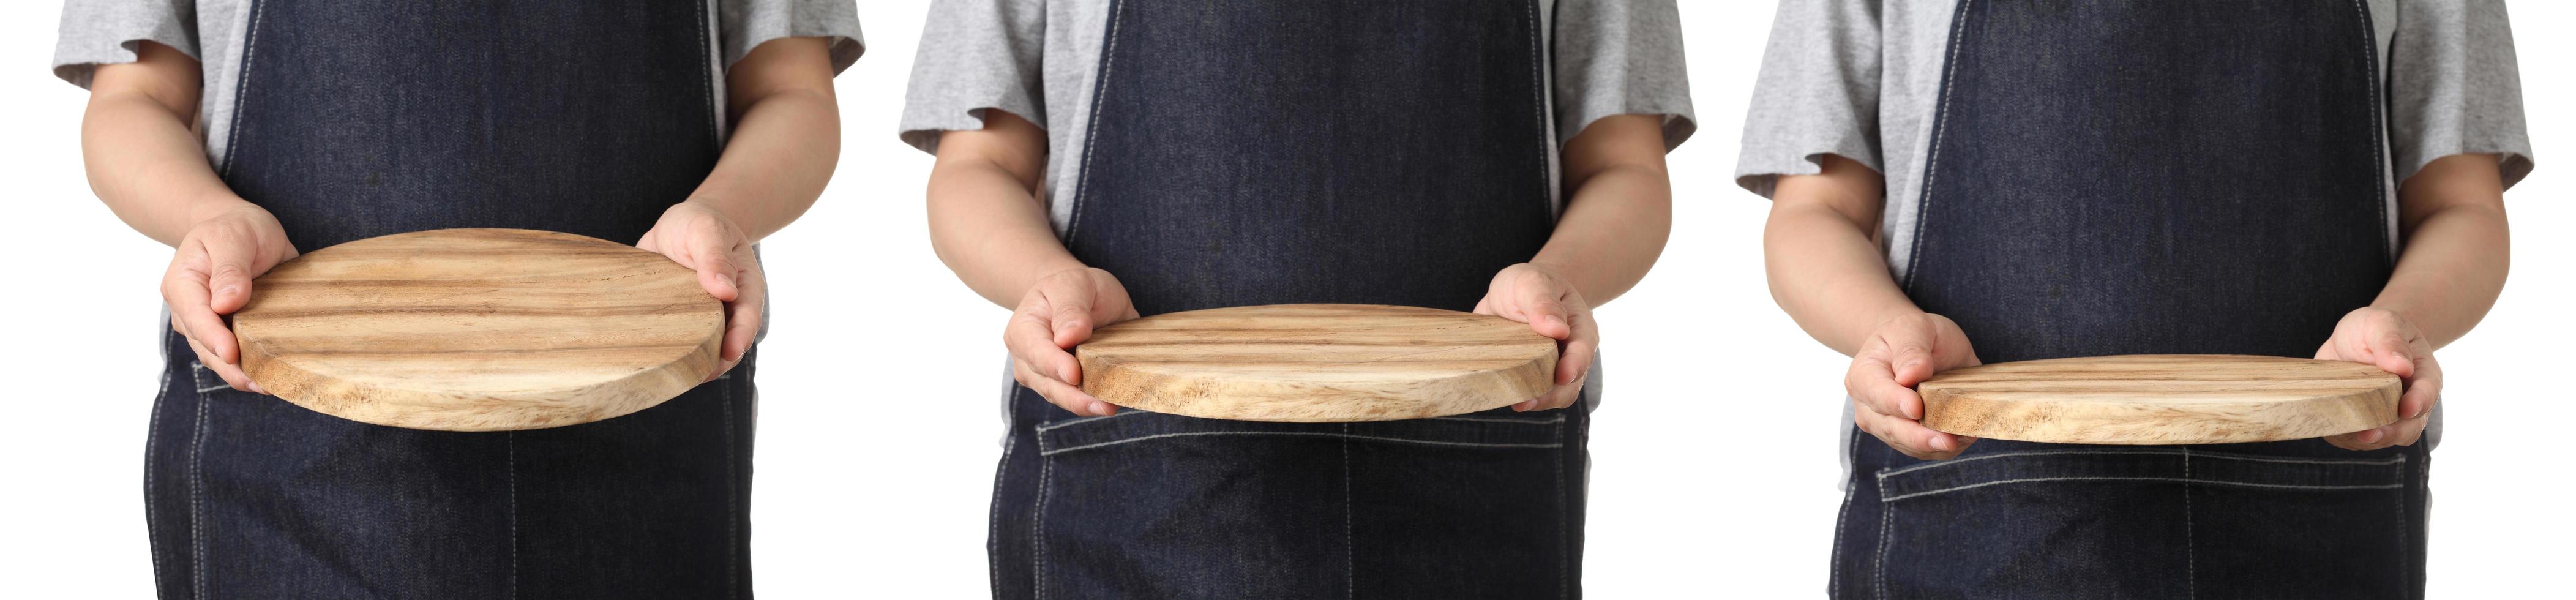 kock håller trä skärbräda på vit bakgrund foto